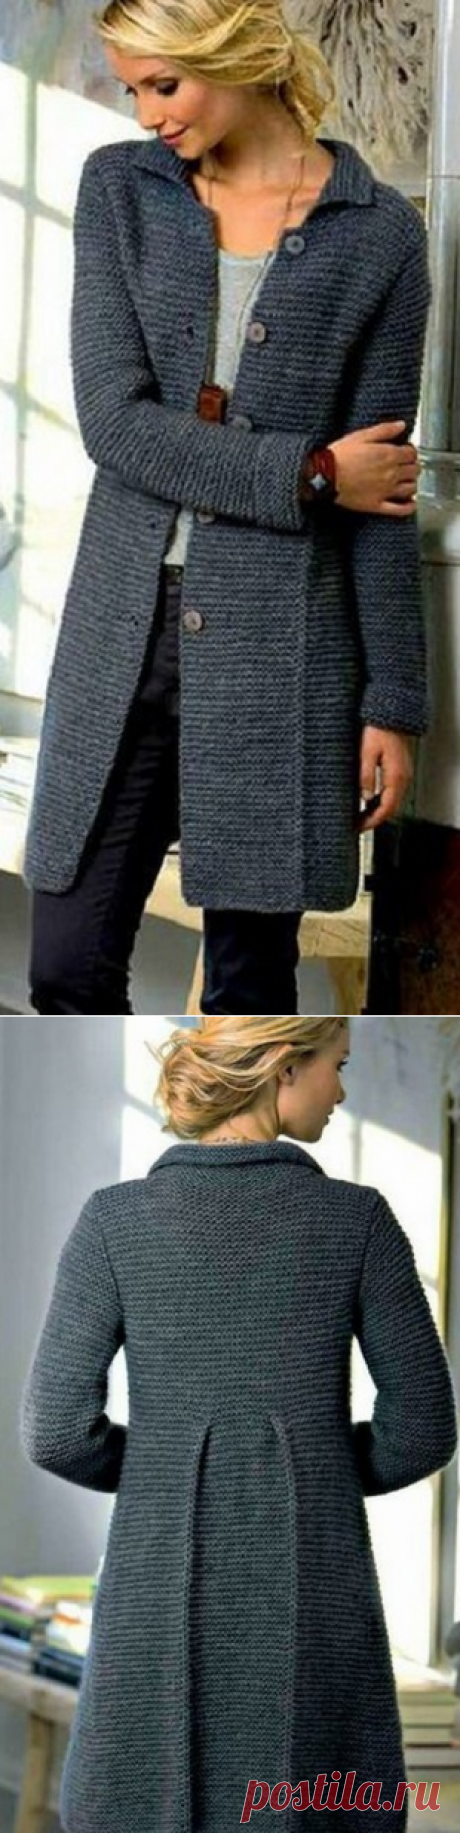 Вязание пальто спицами